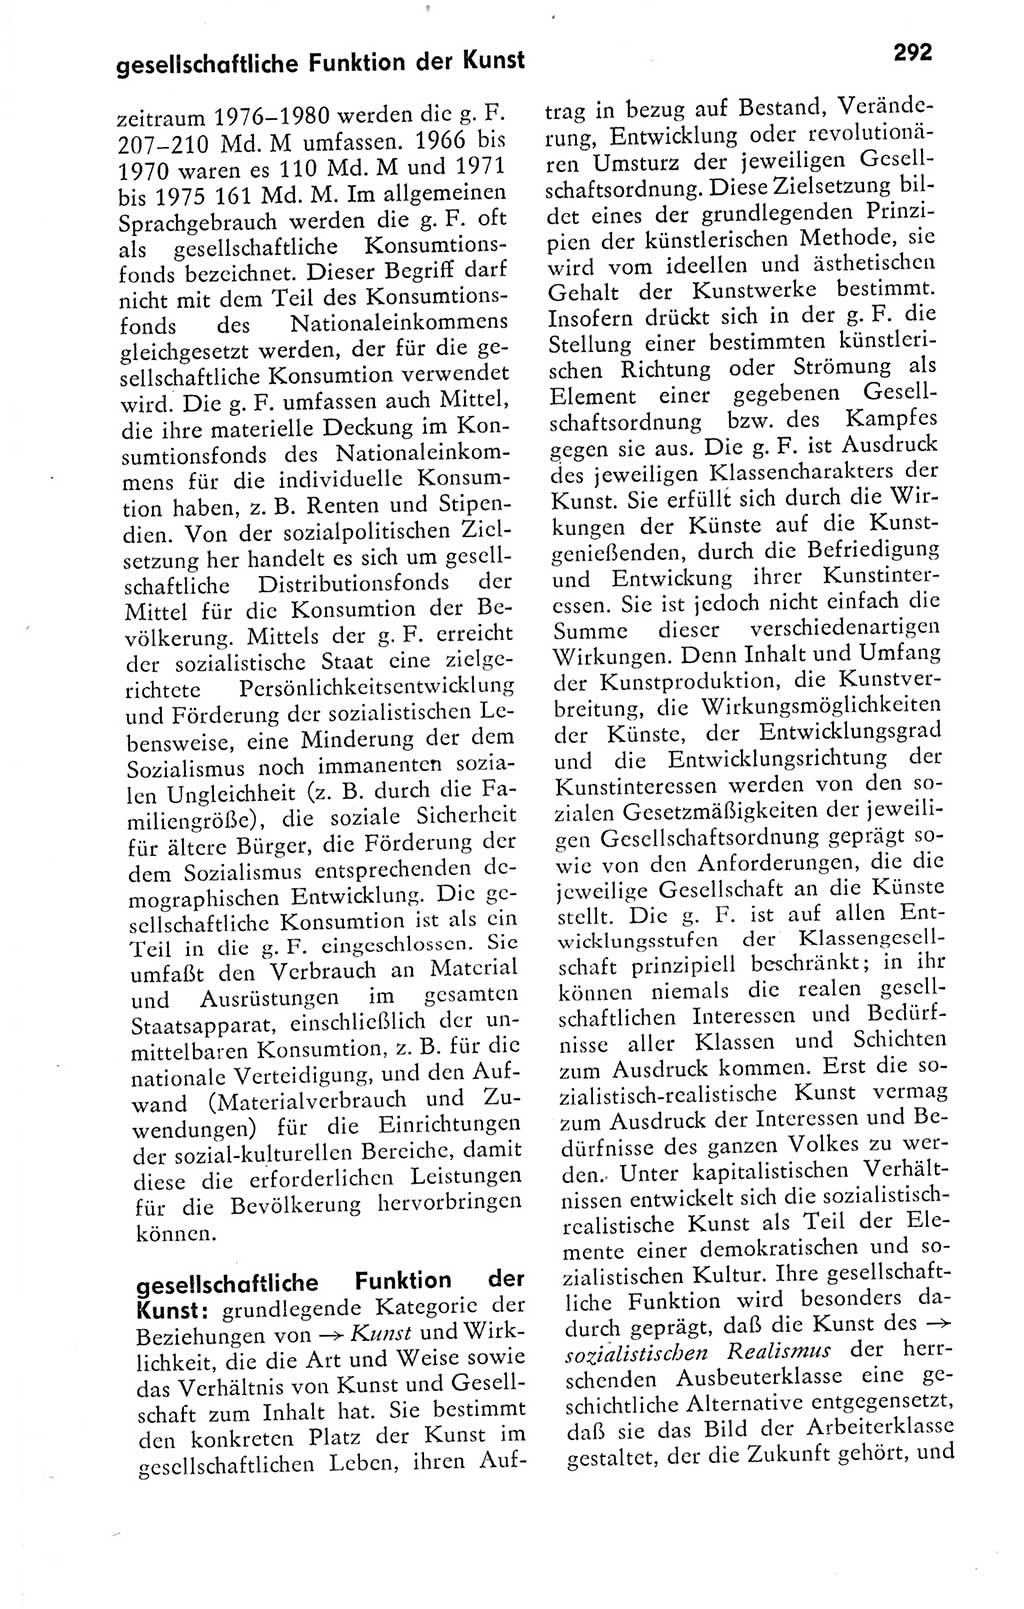 Kleines politisches Wörterbuch [Deutsche Demokratische Republik (DDR)] 1978, Seite 292 (Kl. pol. Wb. DDR 1978, S. 292)